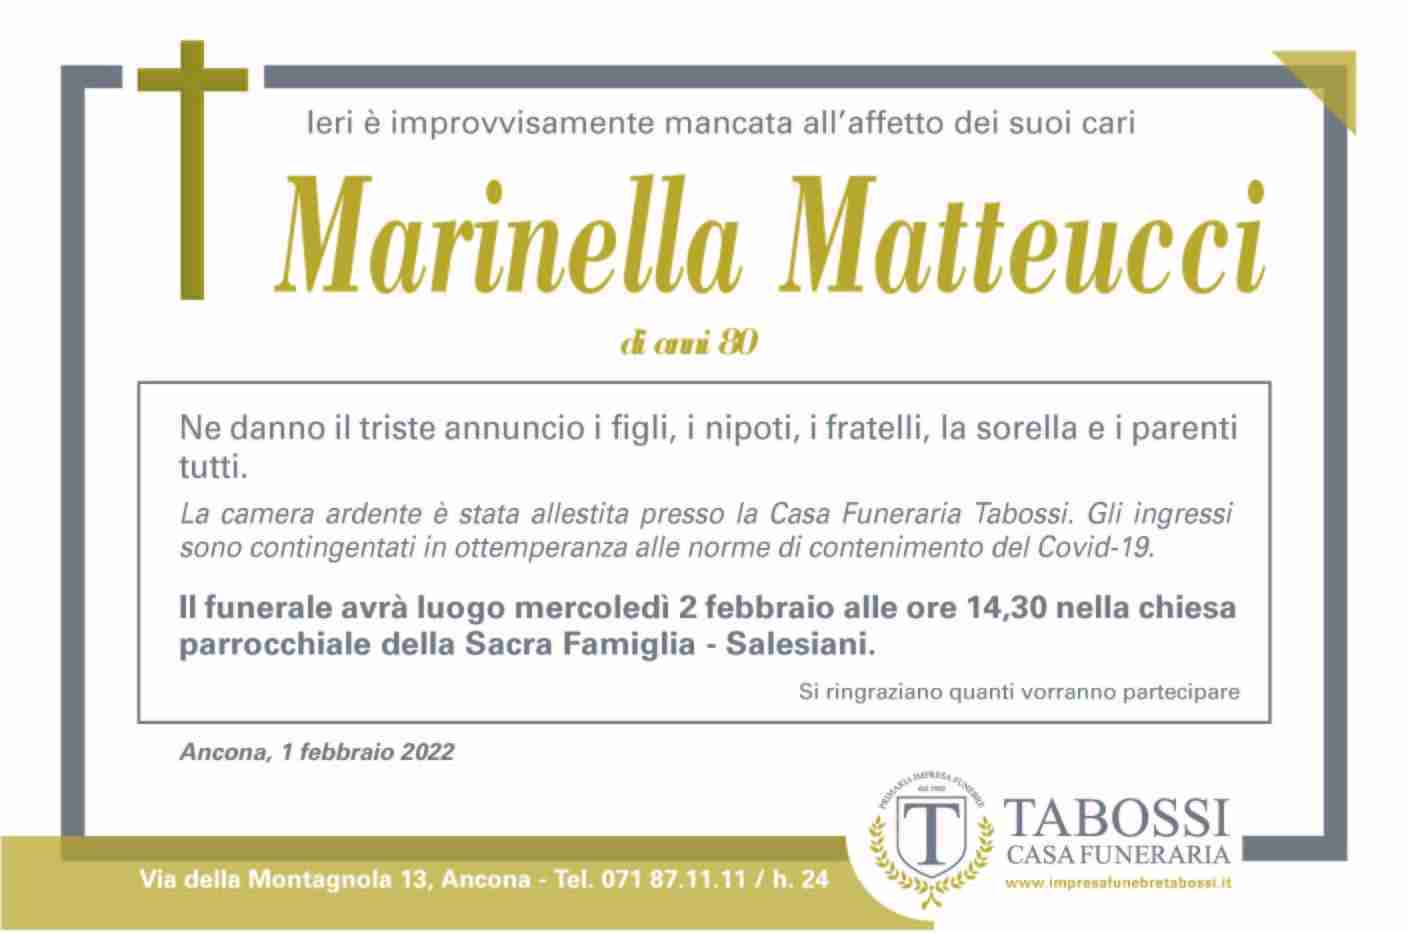 Marinella Matteucci